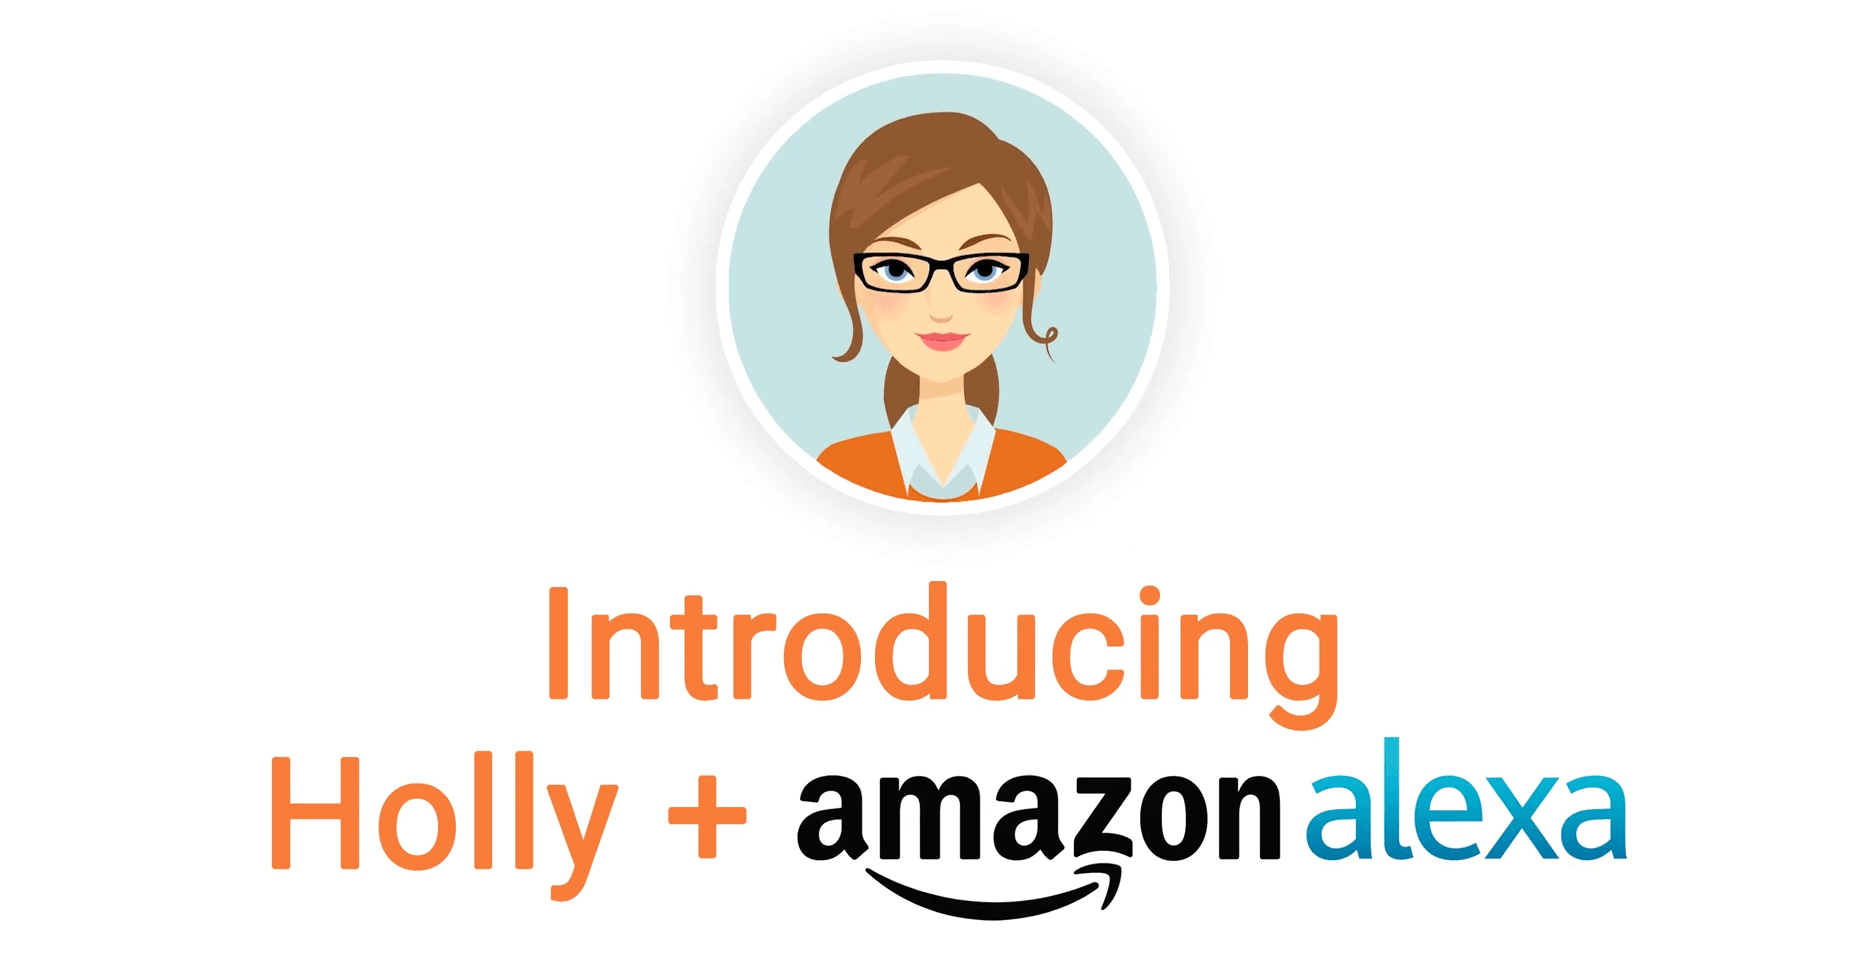 Holly + Amazon alexa